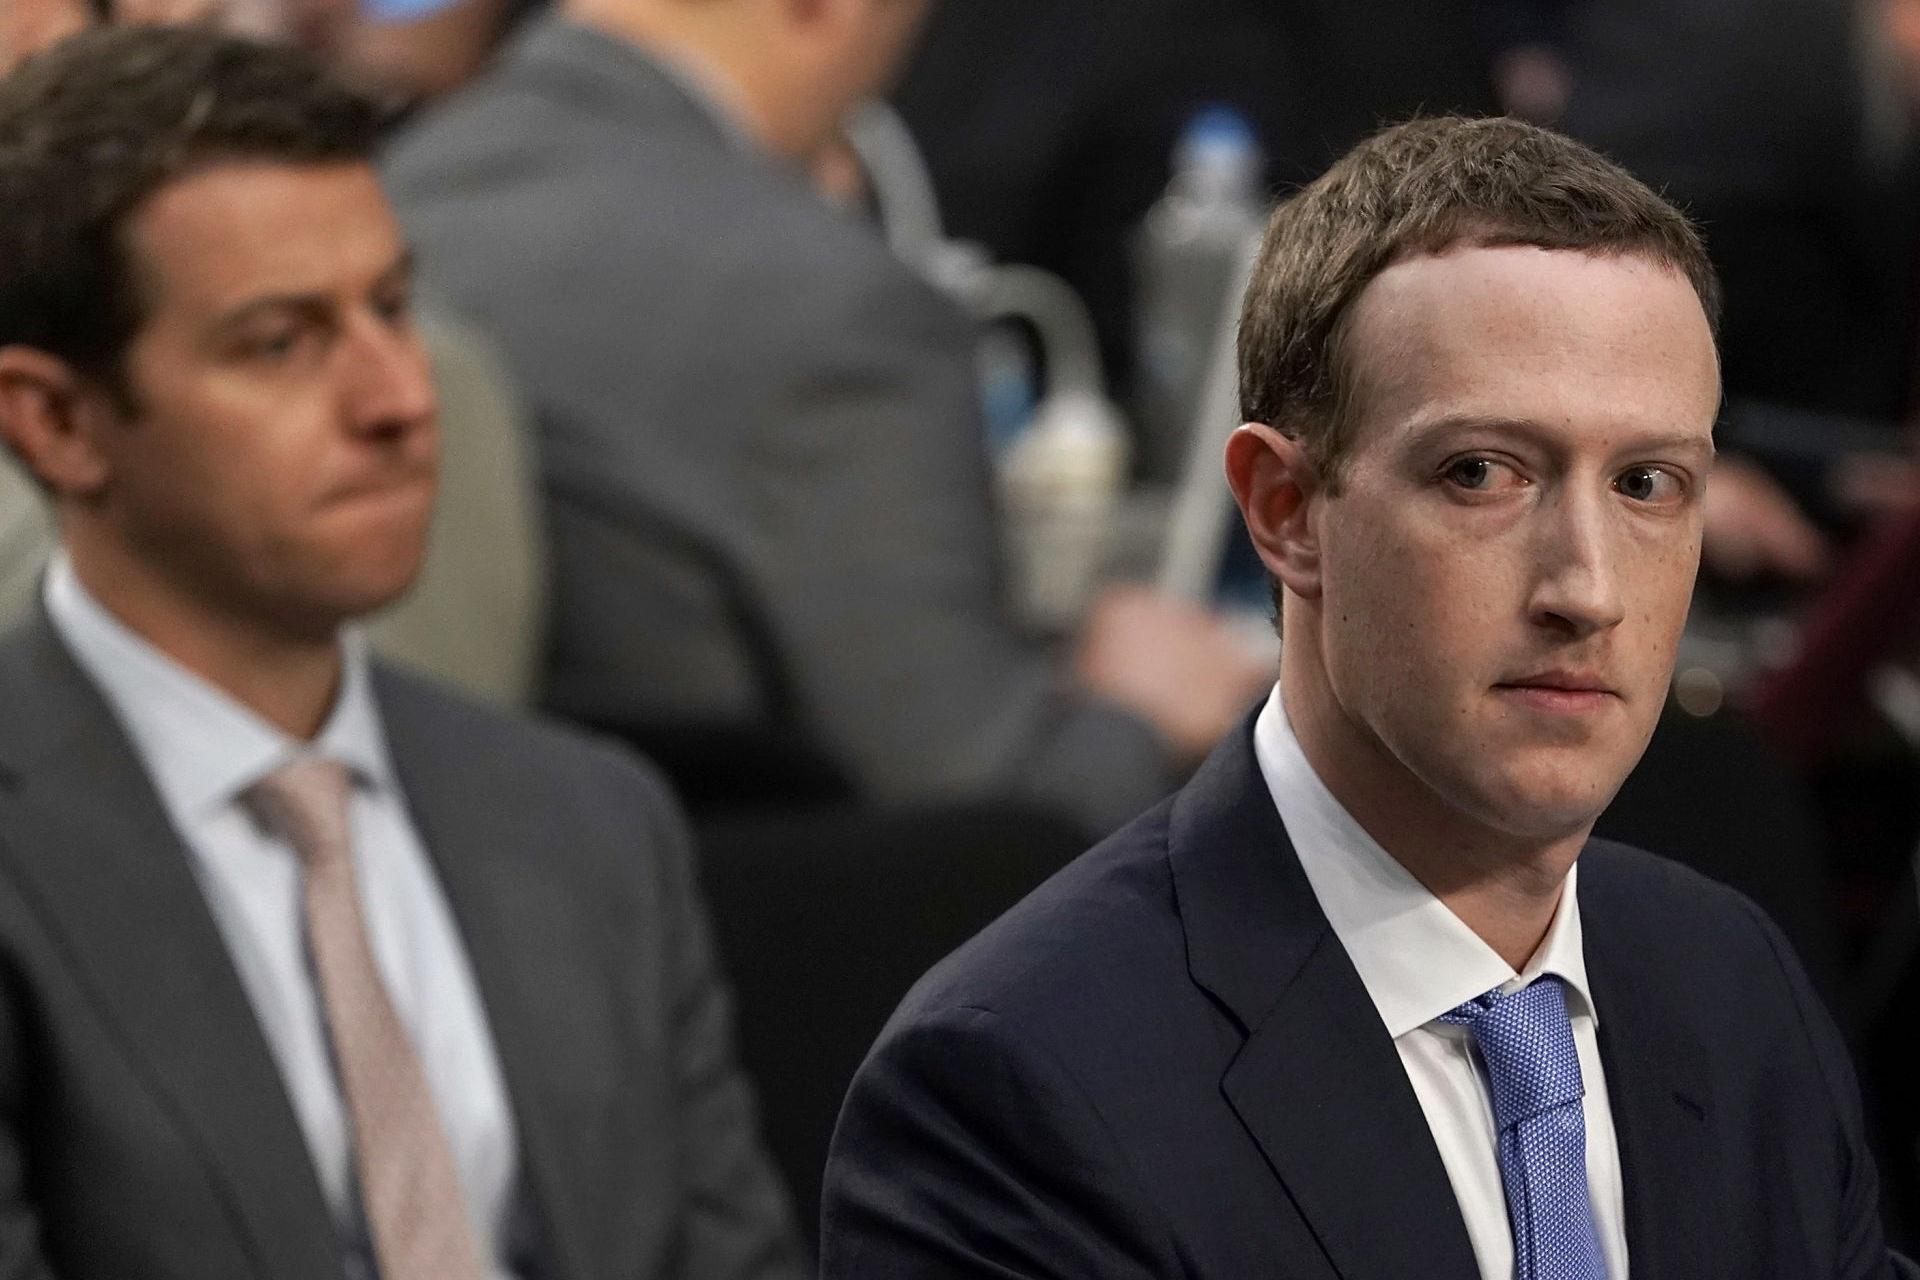 مرجع متخصصين ايران مارك زاكربرگ / Mark Zuckerberg در جلسه مجلس سنا با كت شلوار